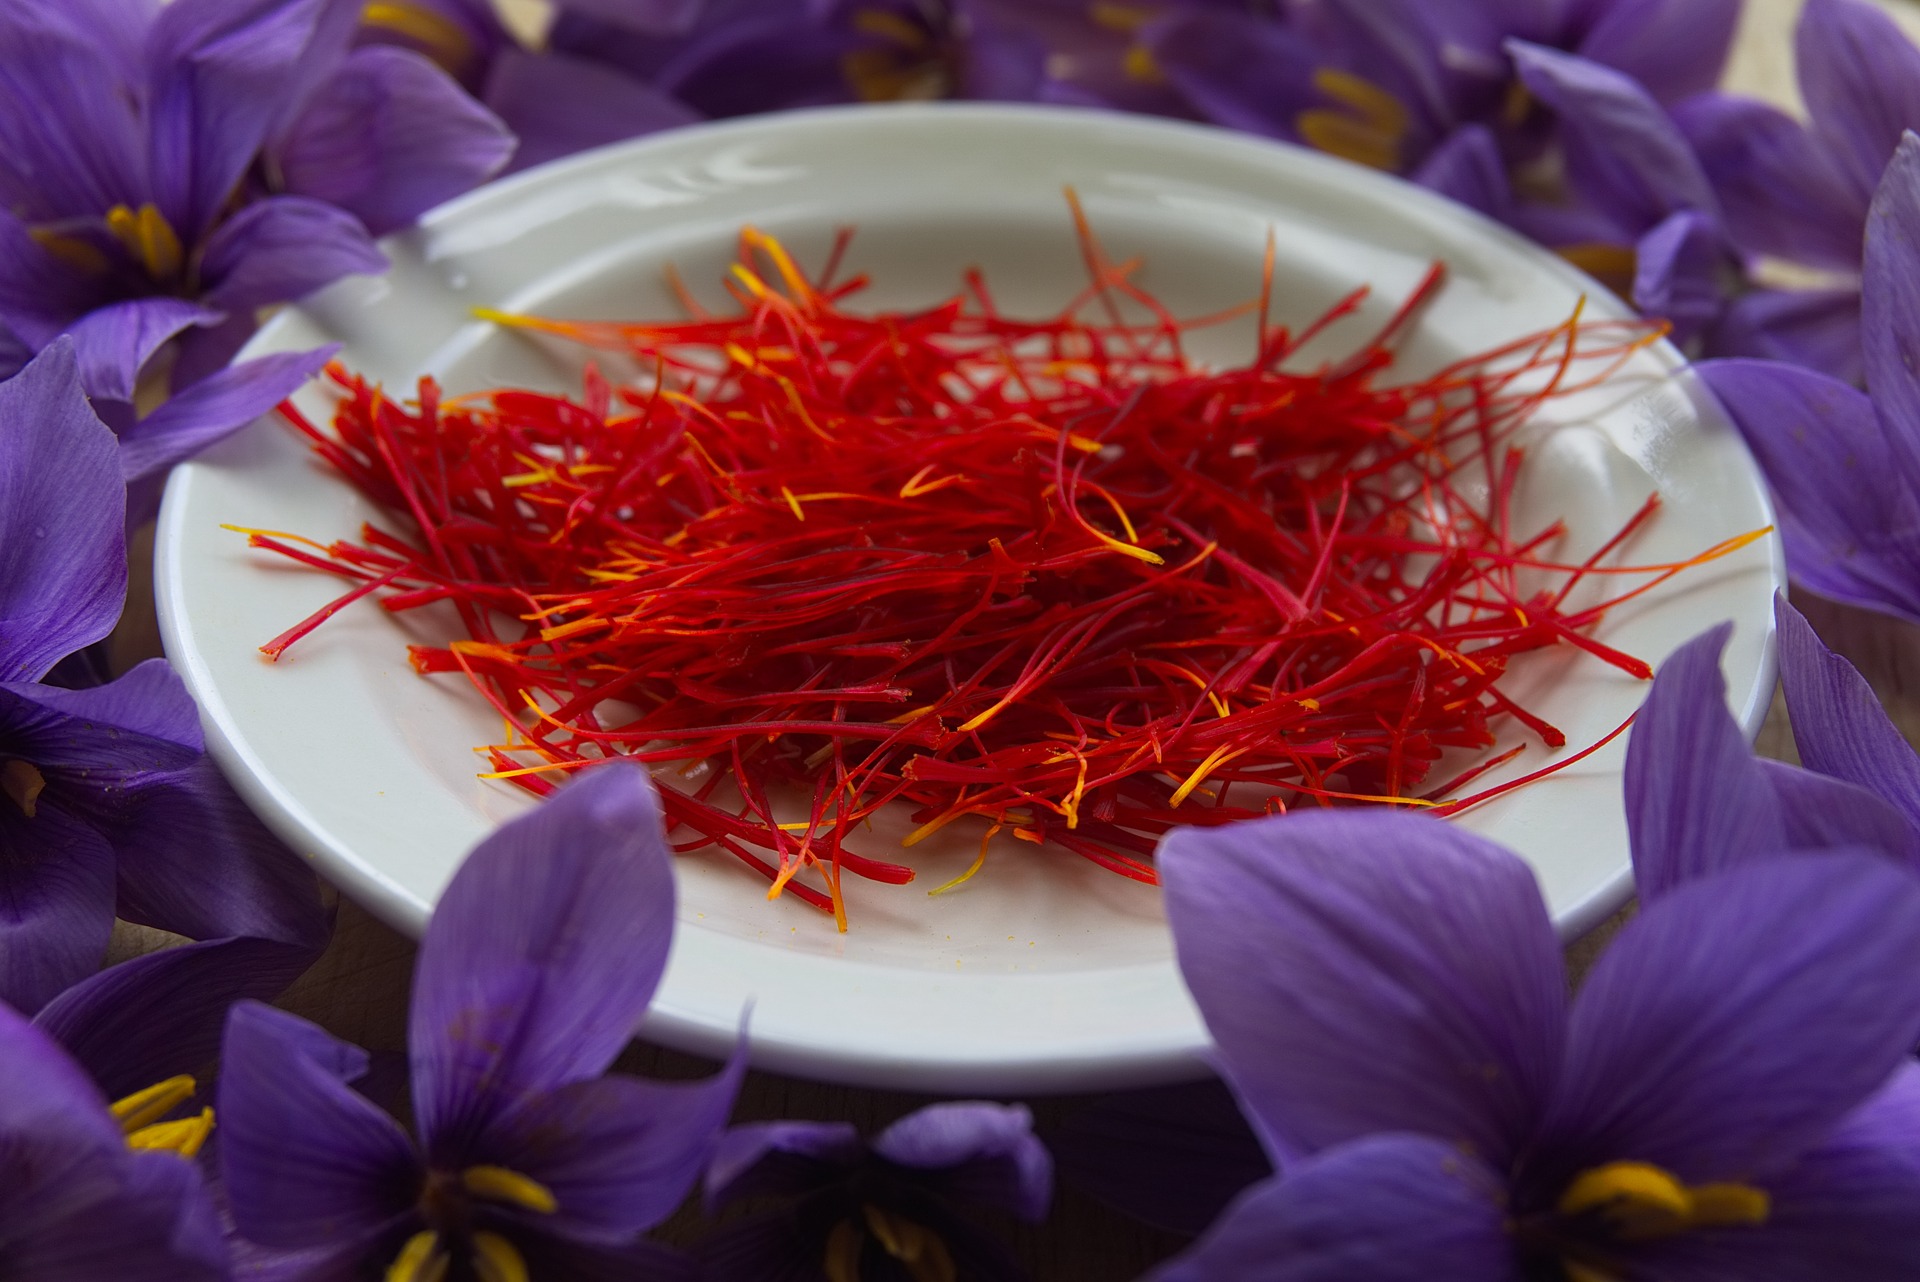 所以才有了藏红花的名字) 值得一提的是,在西班牙,藏红花真的是便宜啊